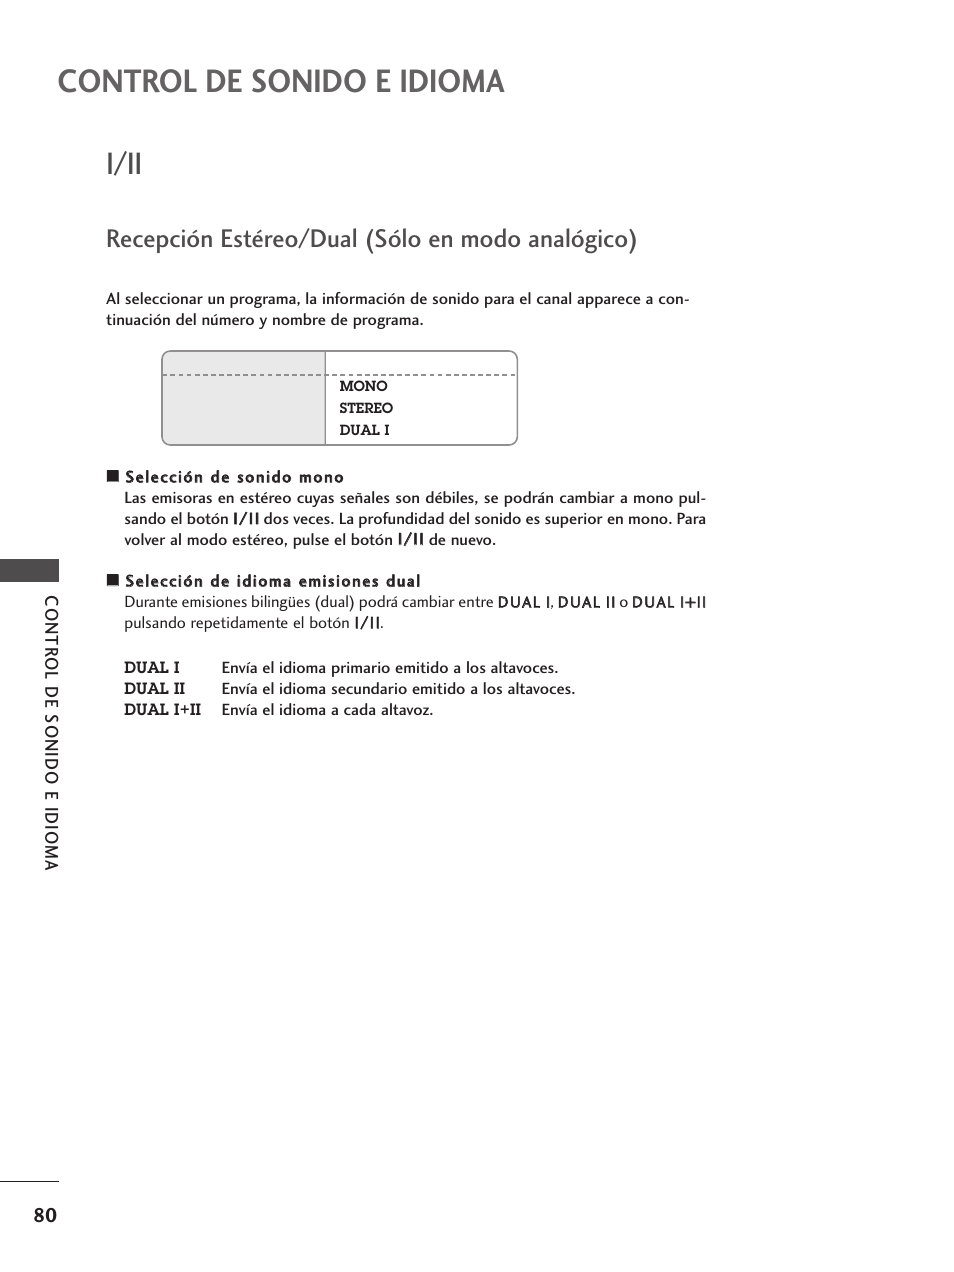 I/ii, Recepción estéreo/dual (sólo en modo analógico), Control de sonido e idioma | LG 42LY99 Manual del usuario | Página 82 / 116